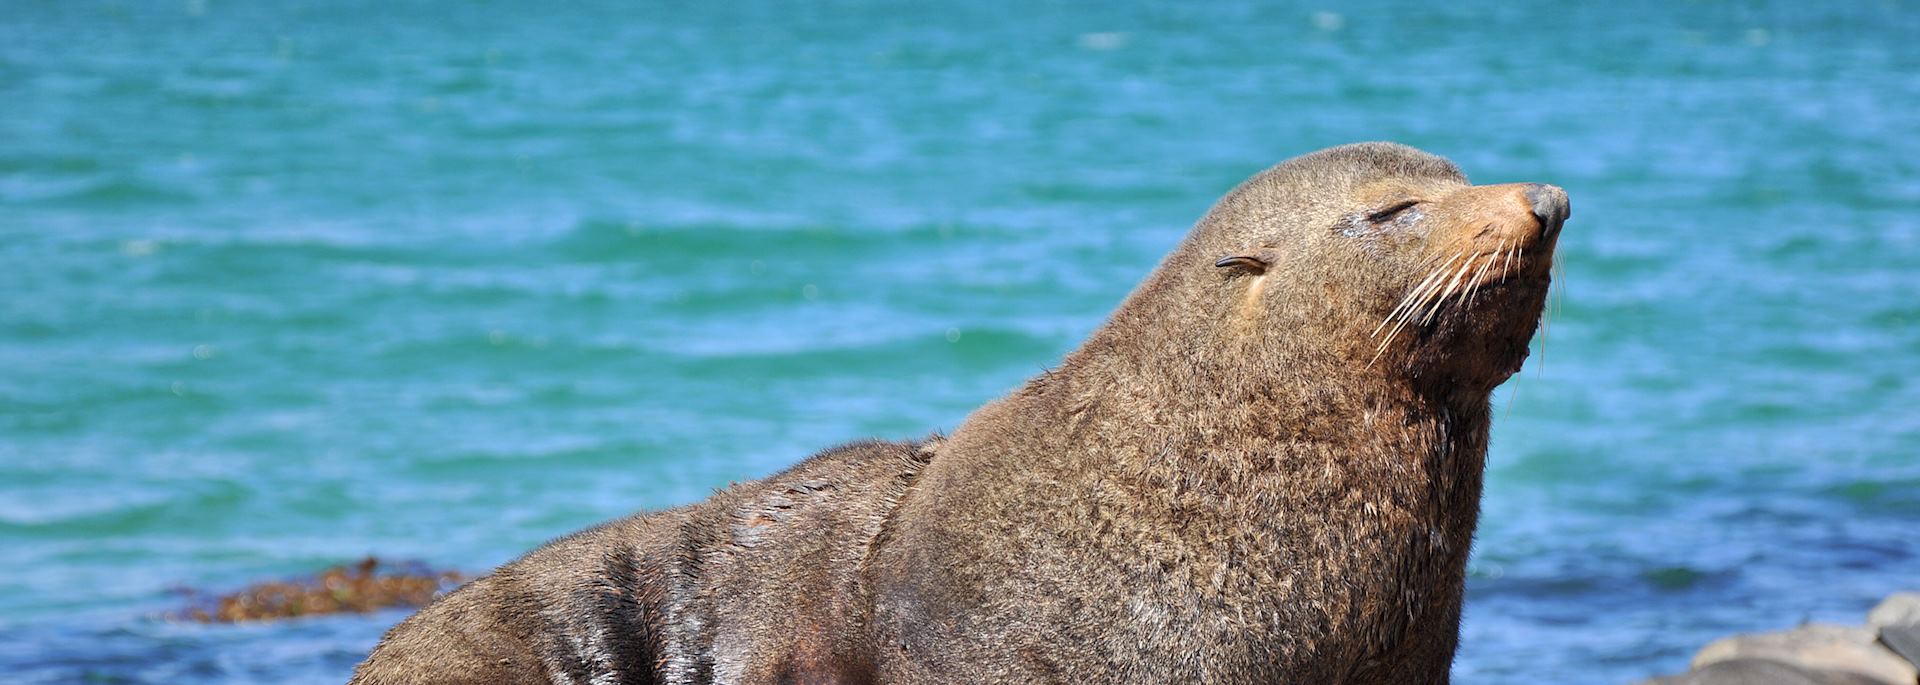 Seal in the Otago Peninsula